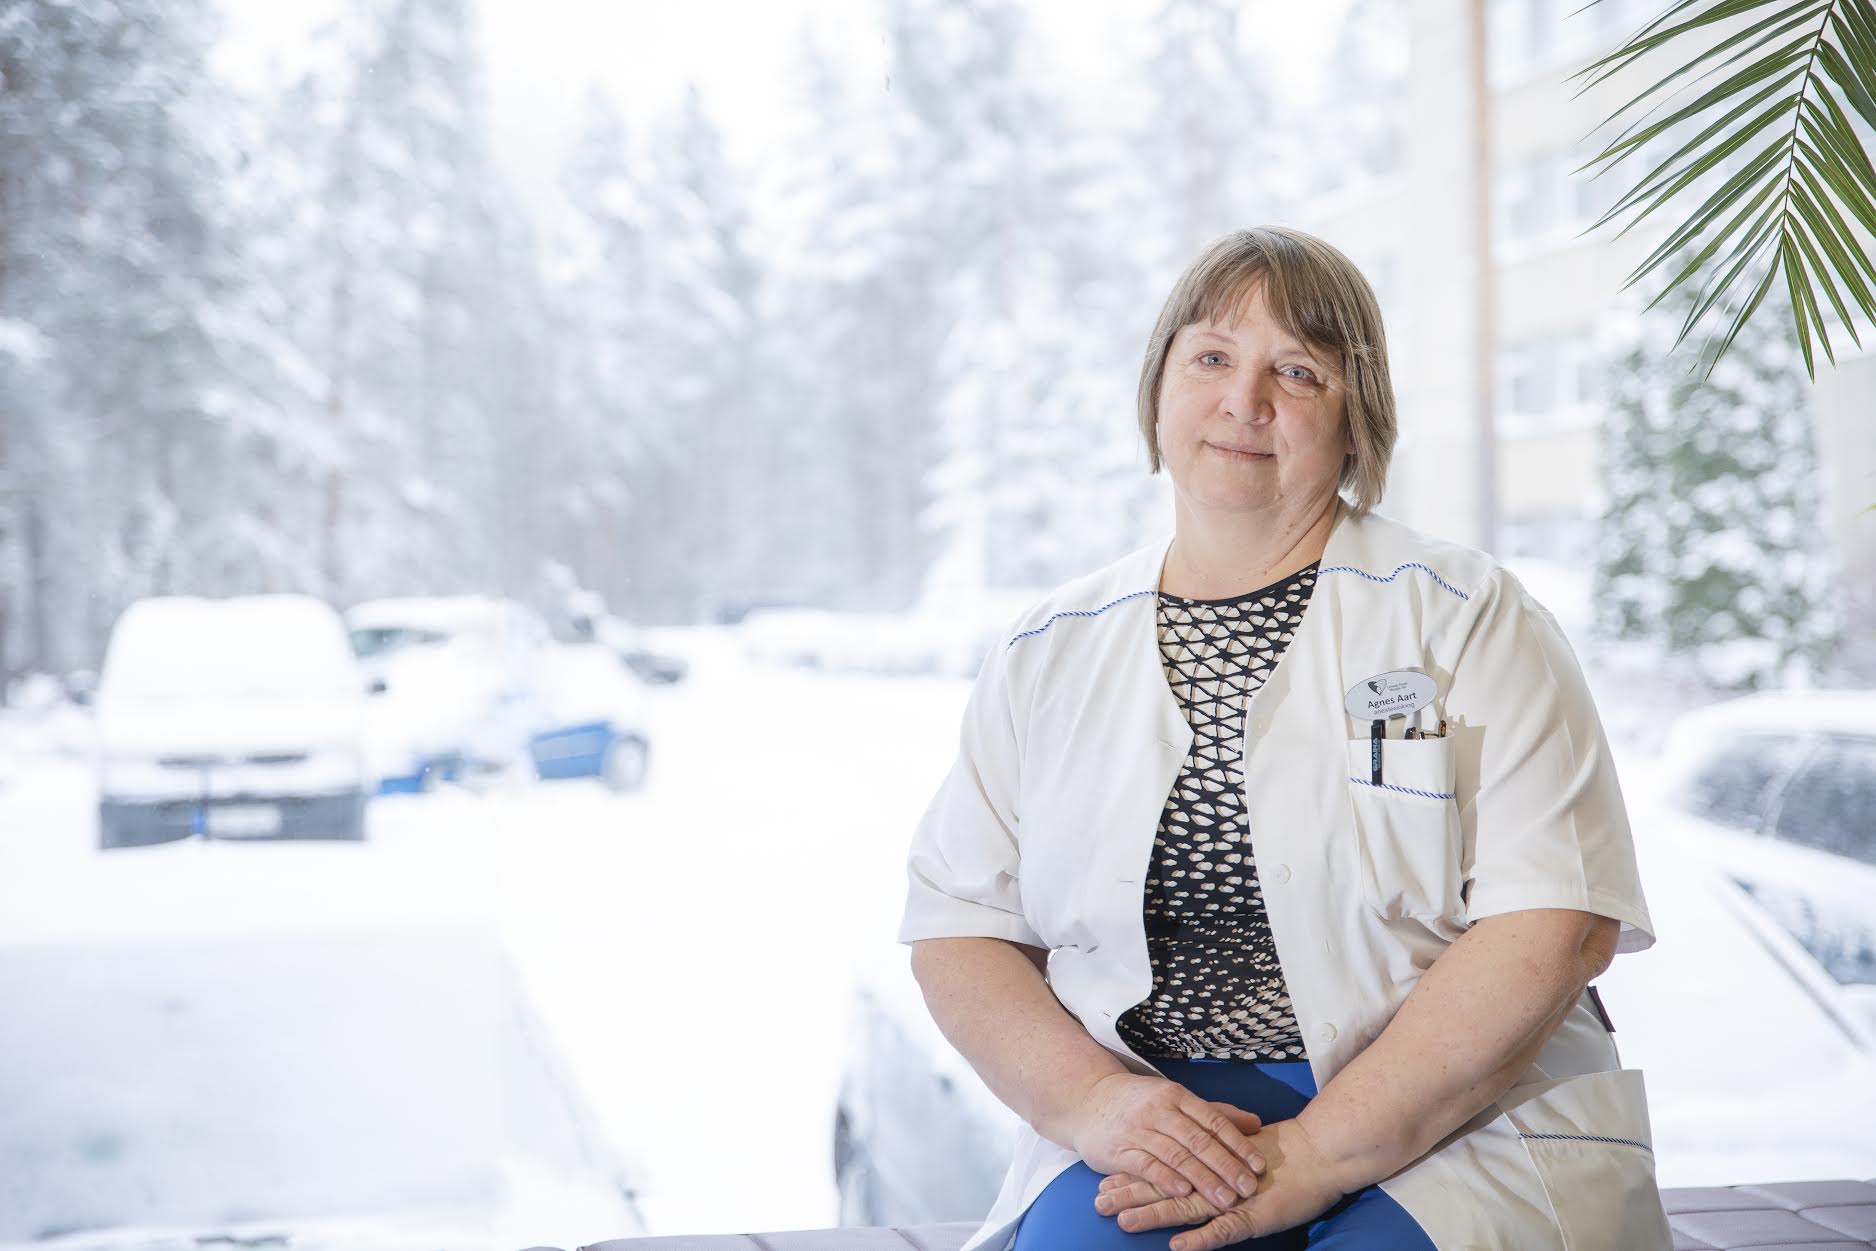 Lõuna-Eesti haigla ravijuht Agnes Aart soovitab haiglas viibiva lähedasega hoida kontakti telefoni teel, kuna viirust kandev külastaja ei pruugi oma haigestumisest veel teadlikki olla. Fotod: AIGAR NAGEL